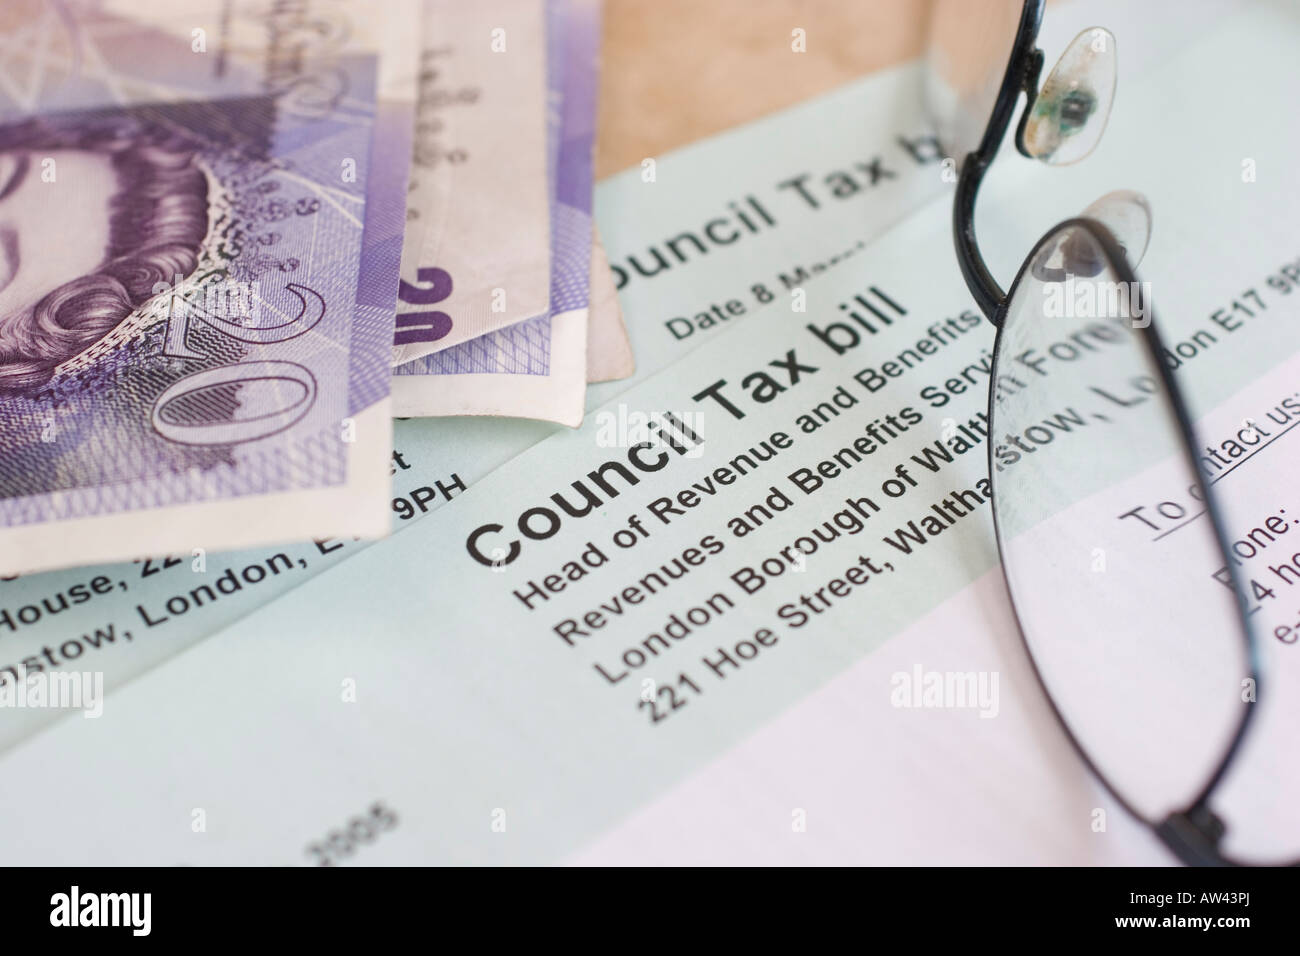 Londoner Bezirk Waltham Forest Gemeindesteuer Rechnung UK Gemeindesteuer Rechnung mit Sterling Bargeld und Gläser England UK Stockfoto